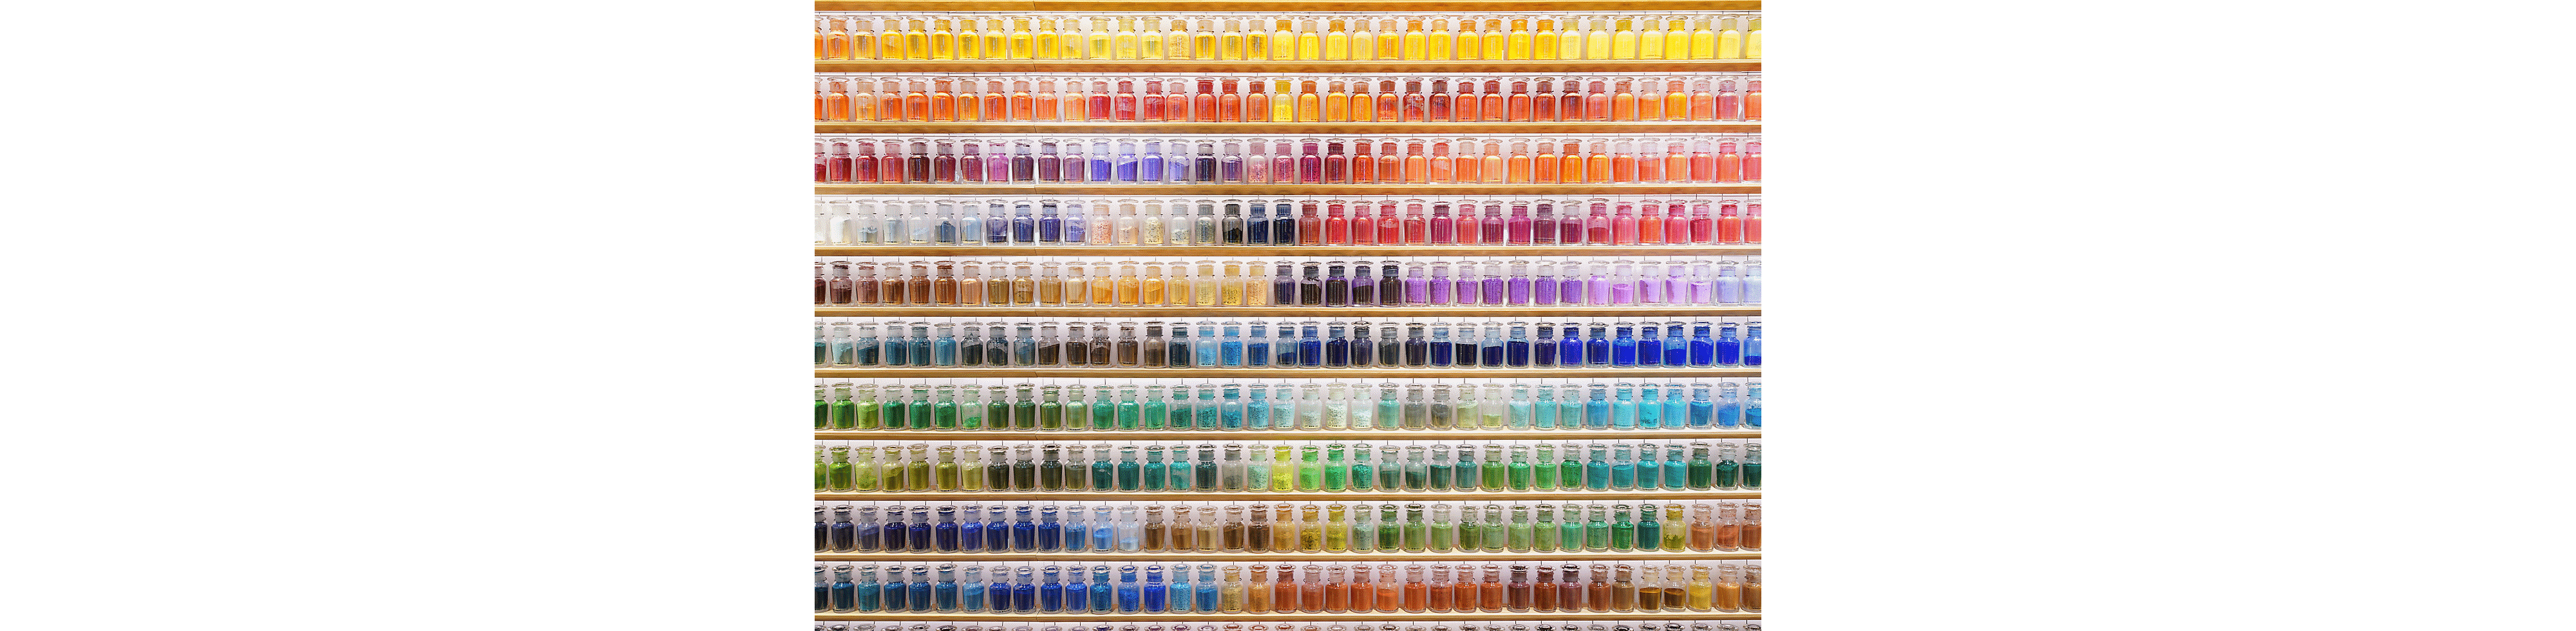 Sienos, pilnos spalvingų butelių, pavyzdys